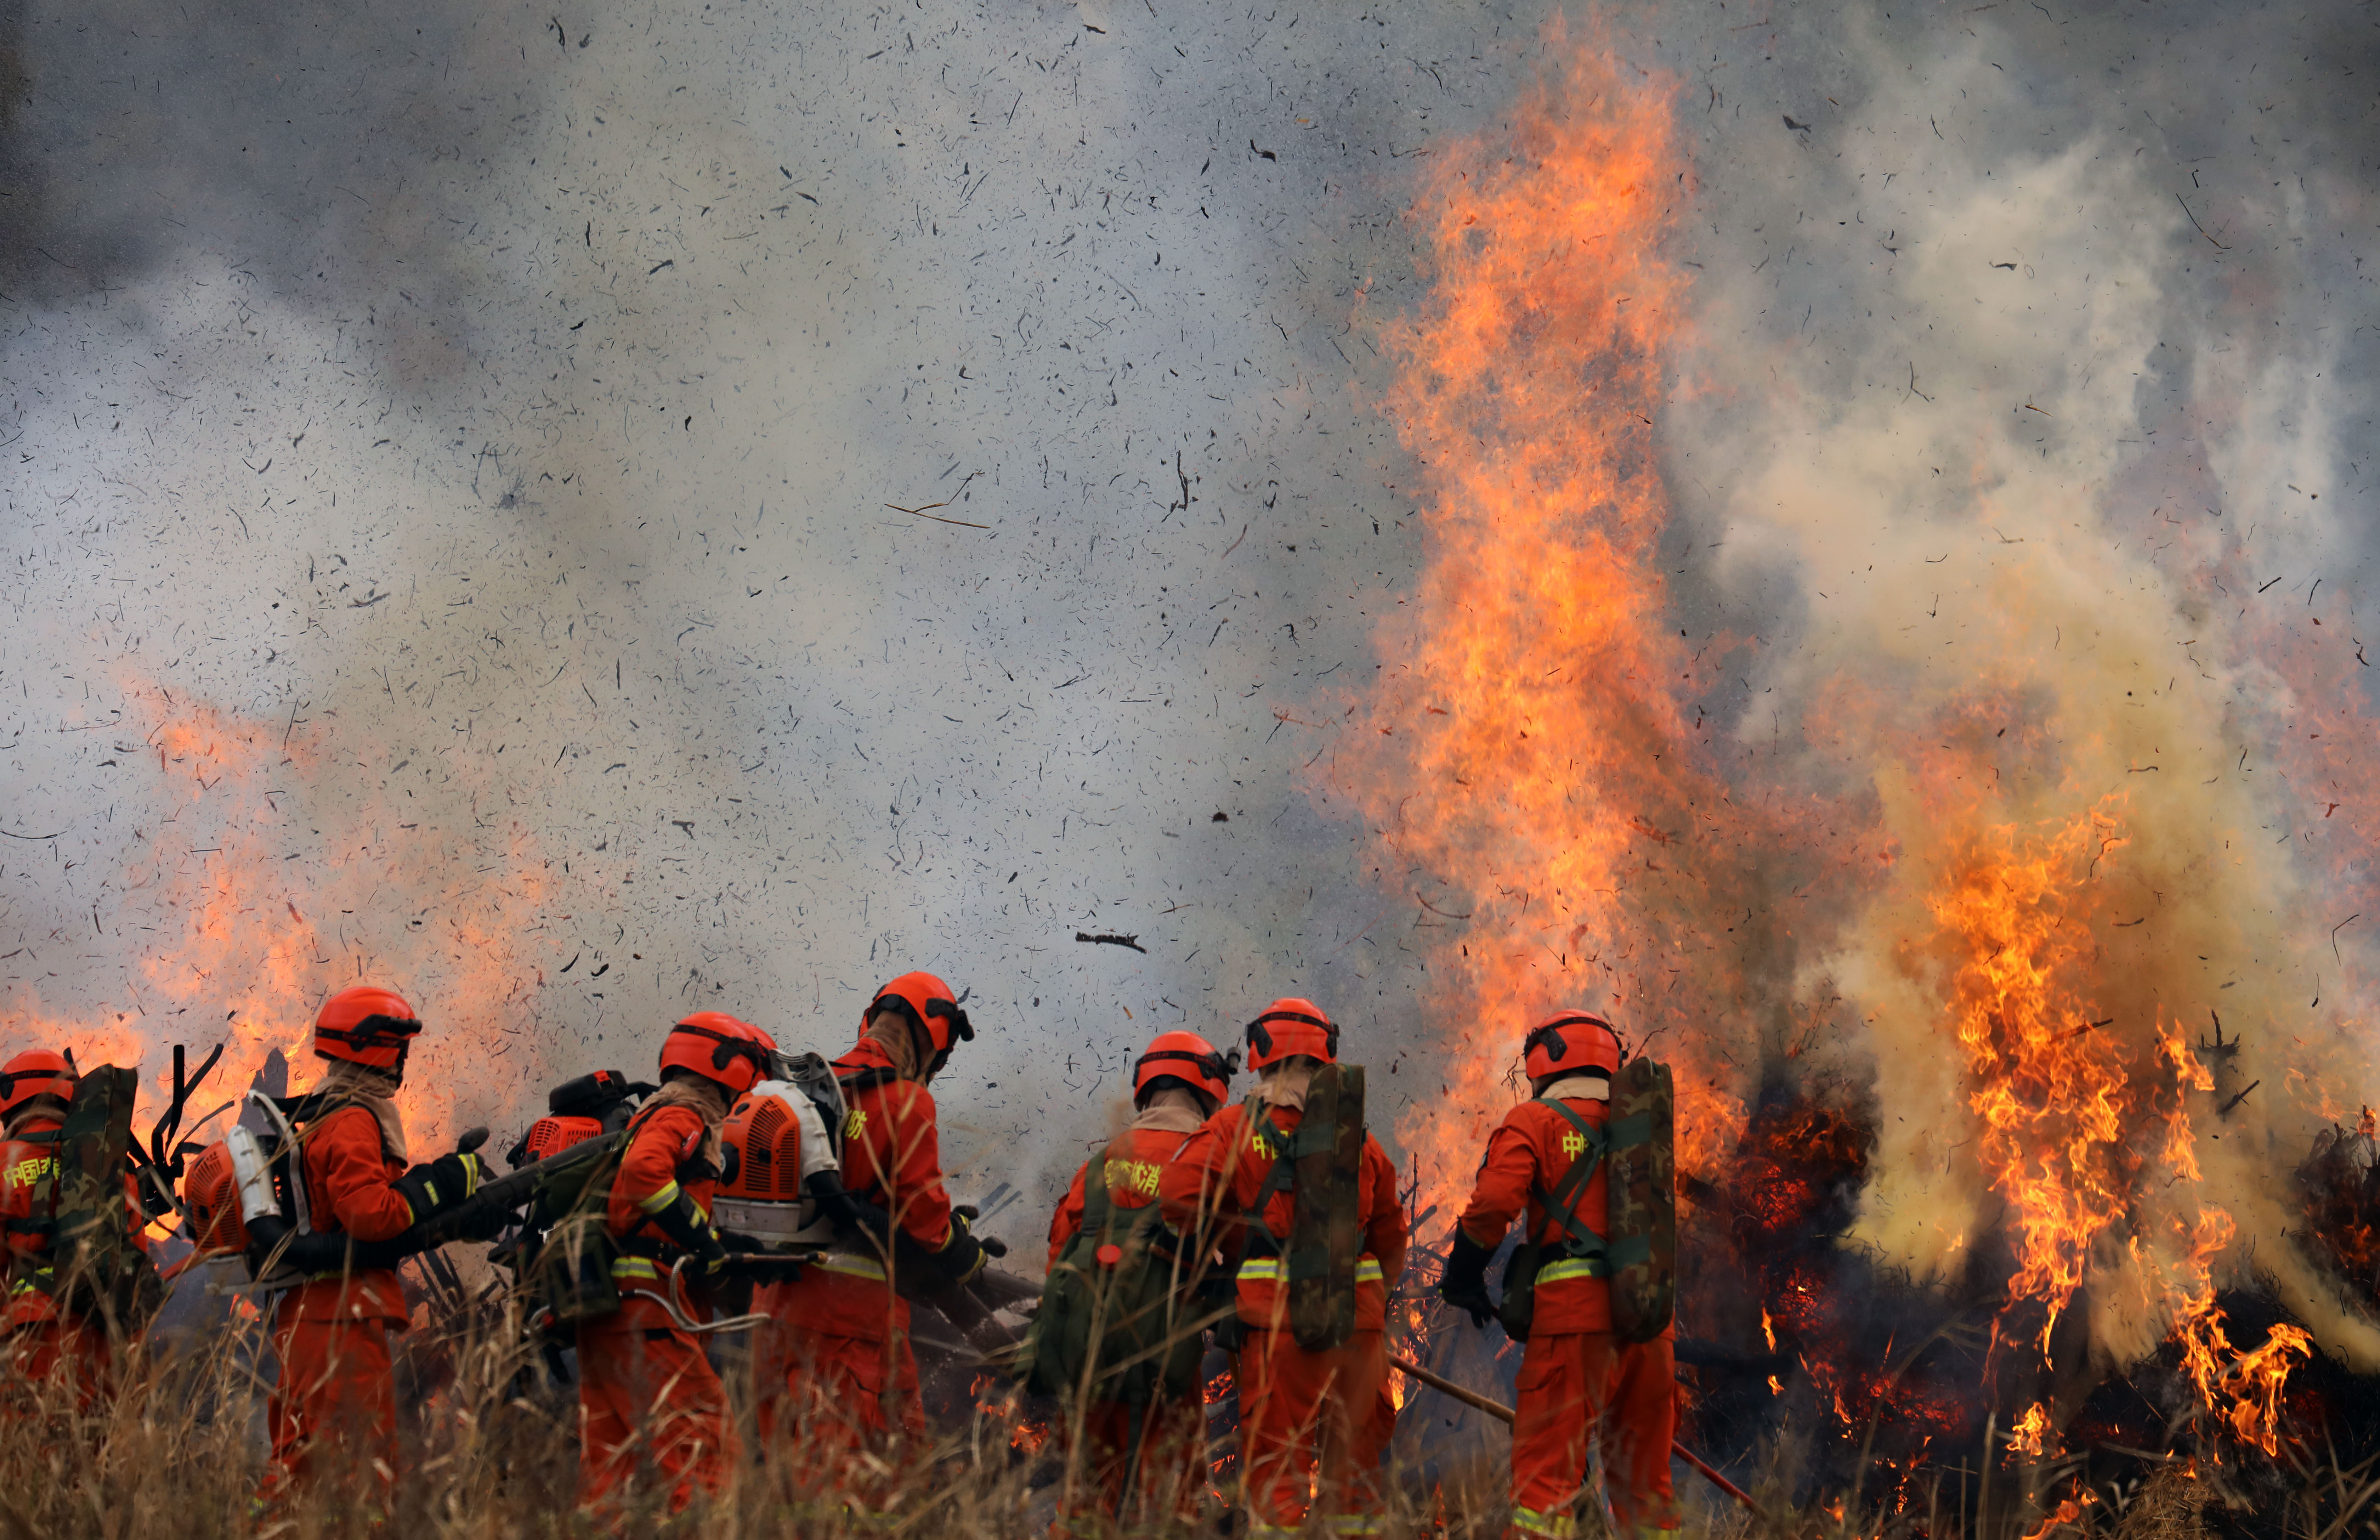 甘肃举行重特大森林火灾灭火演习,首次动用移动卫星通讯装备